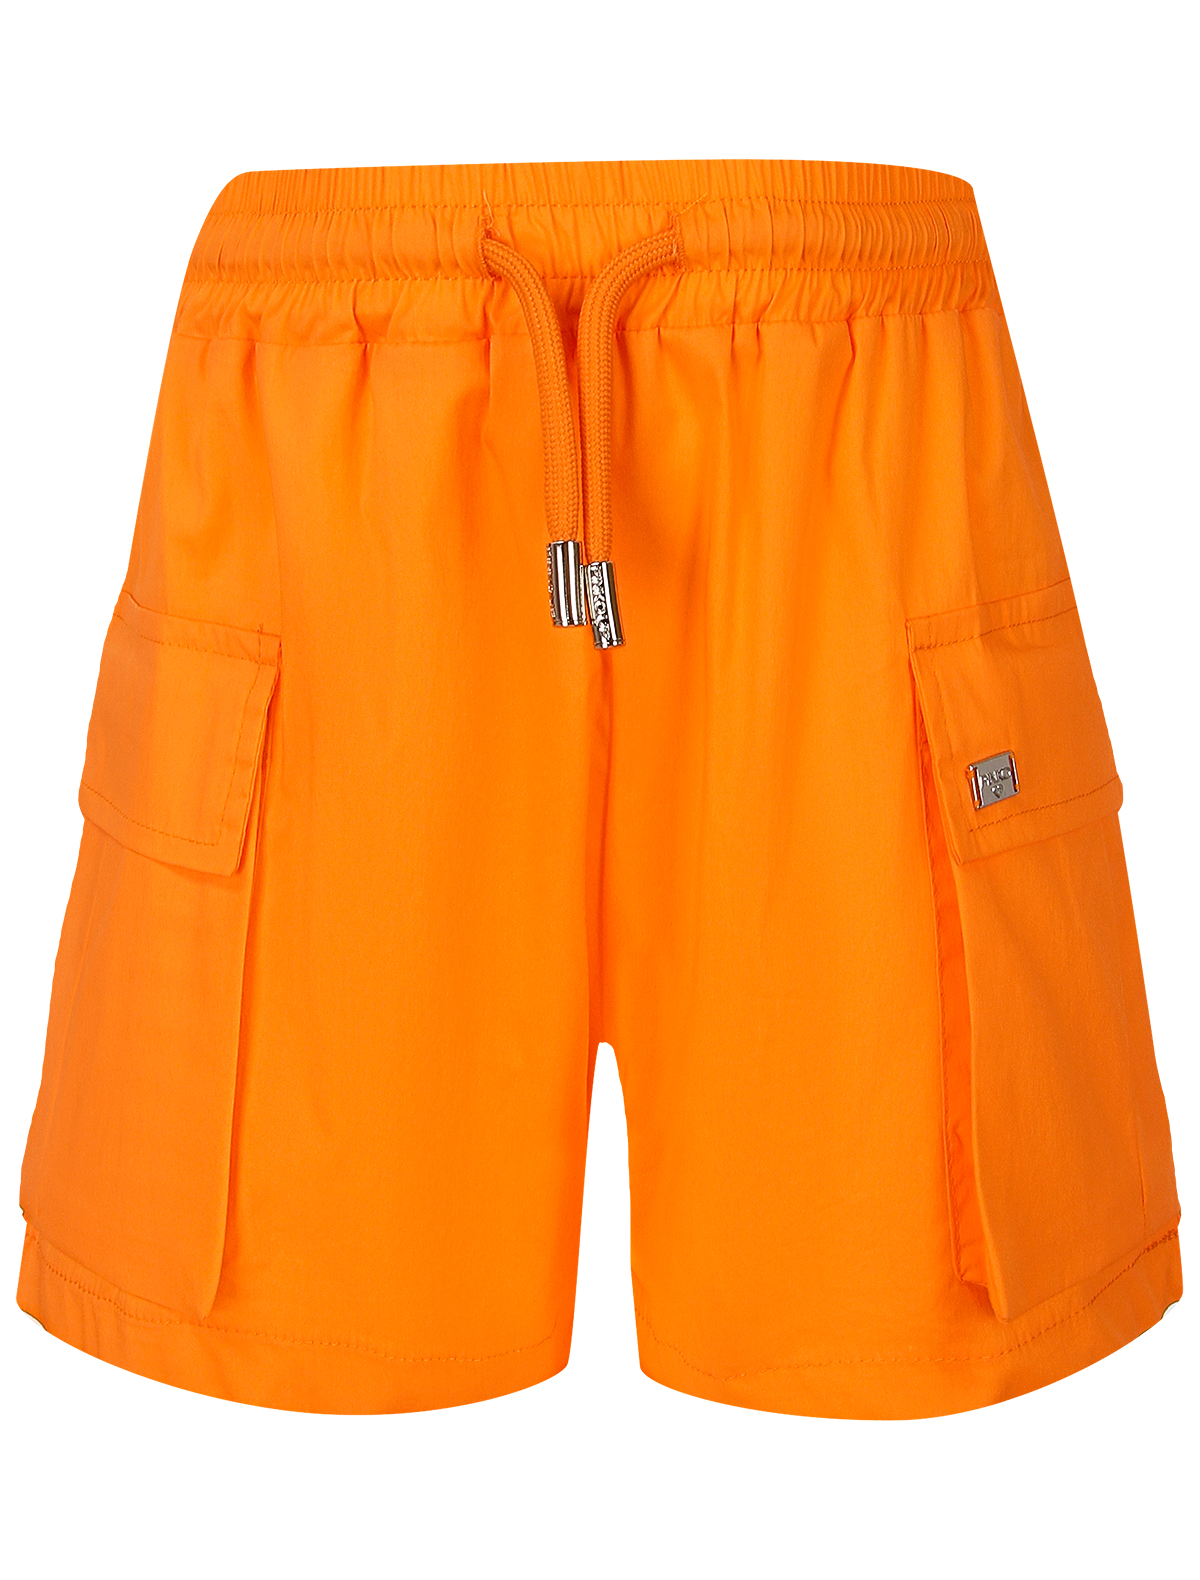 шорты pinko для девочки, оранжевые